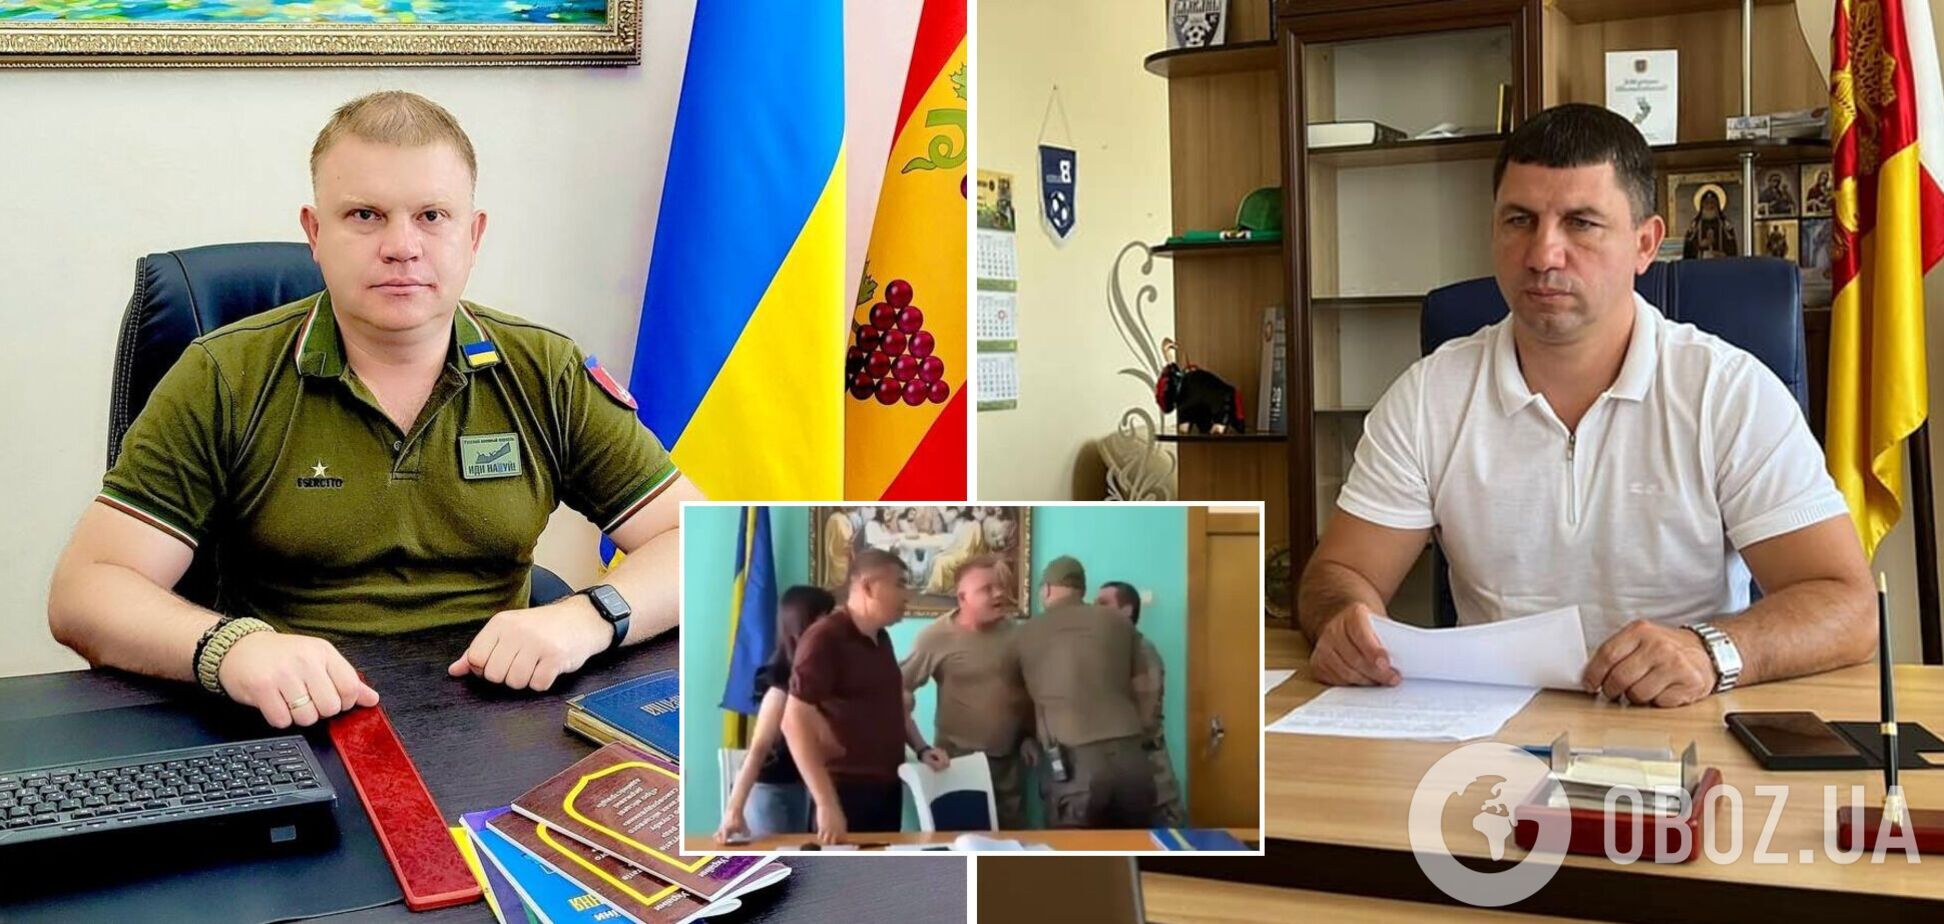 В Белгород-Днестровском глава райсовета и мэр устроили драку прямо на сессии. Видео 18+